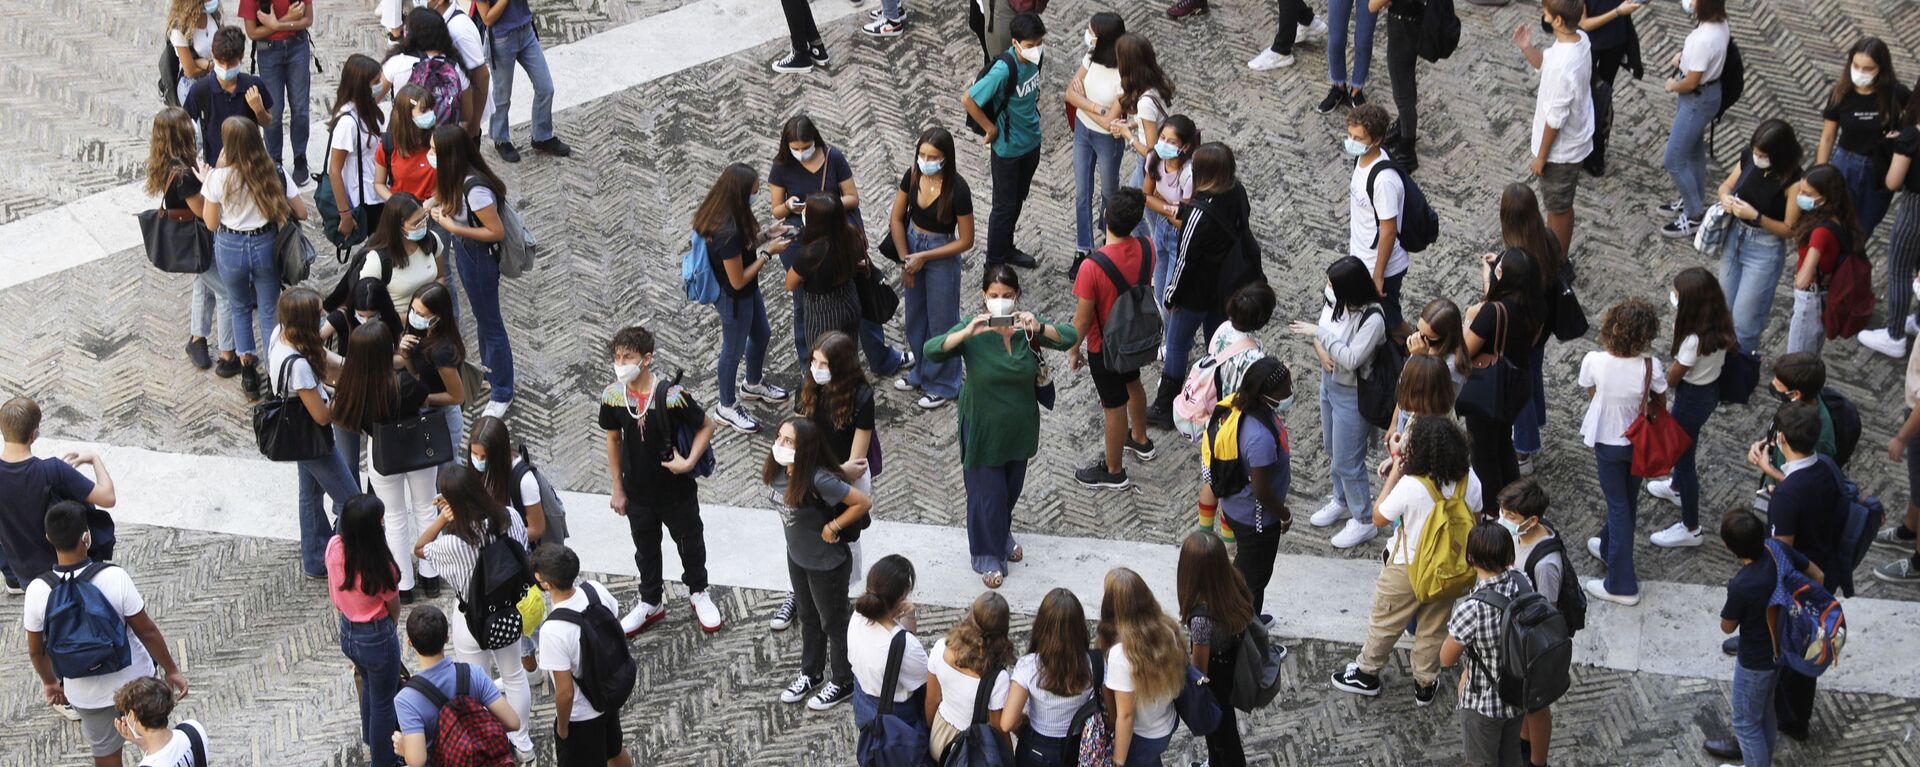 Студенты в медицинских масках во дворе Visconti high school в Риме, Италия - Sputnik Молдова, 1920, 14.06.2021